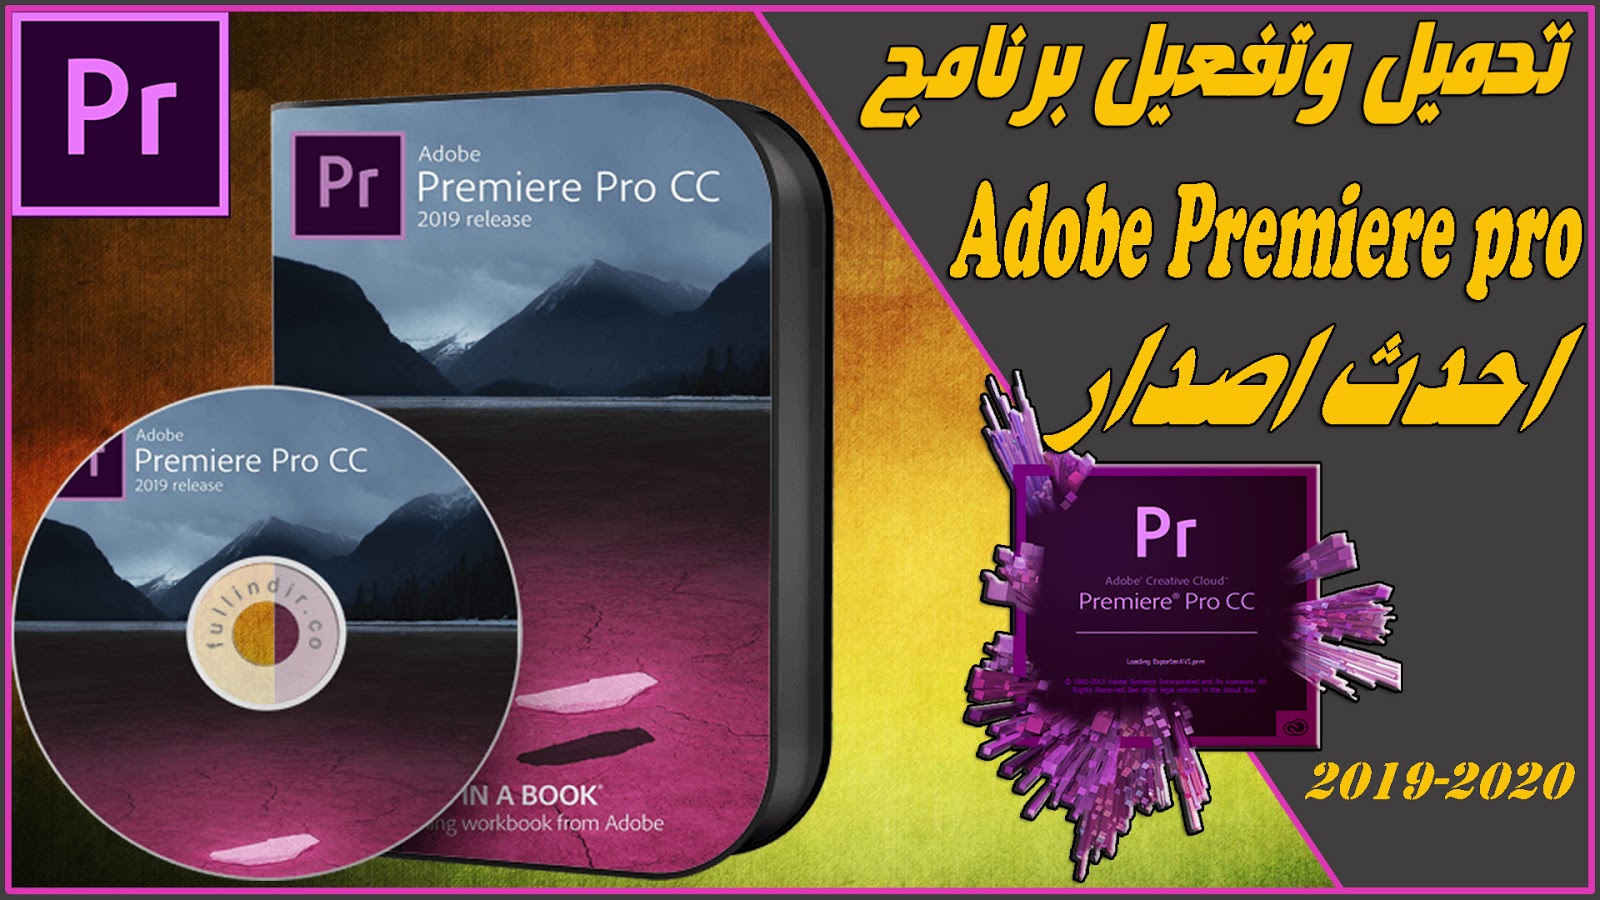 ÙƒÙŠÙÙŠØ© ØªØ­Ù…ÙŠÙ„ Ø¨Ø±Ù†Ø§Ù…Ø¬ Adobe Premiere Pro Cc Ø§Ø­Ø¯Ø« Ø§ØµØ¯Ø§Ø± Ù…Ø¬Ø§Ù†Ø§